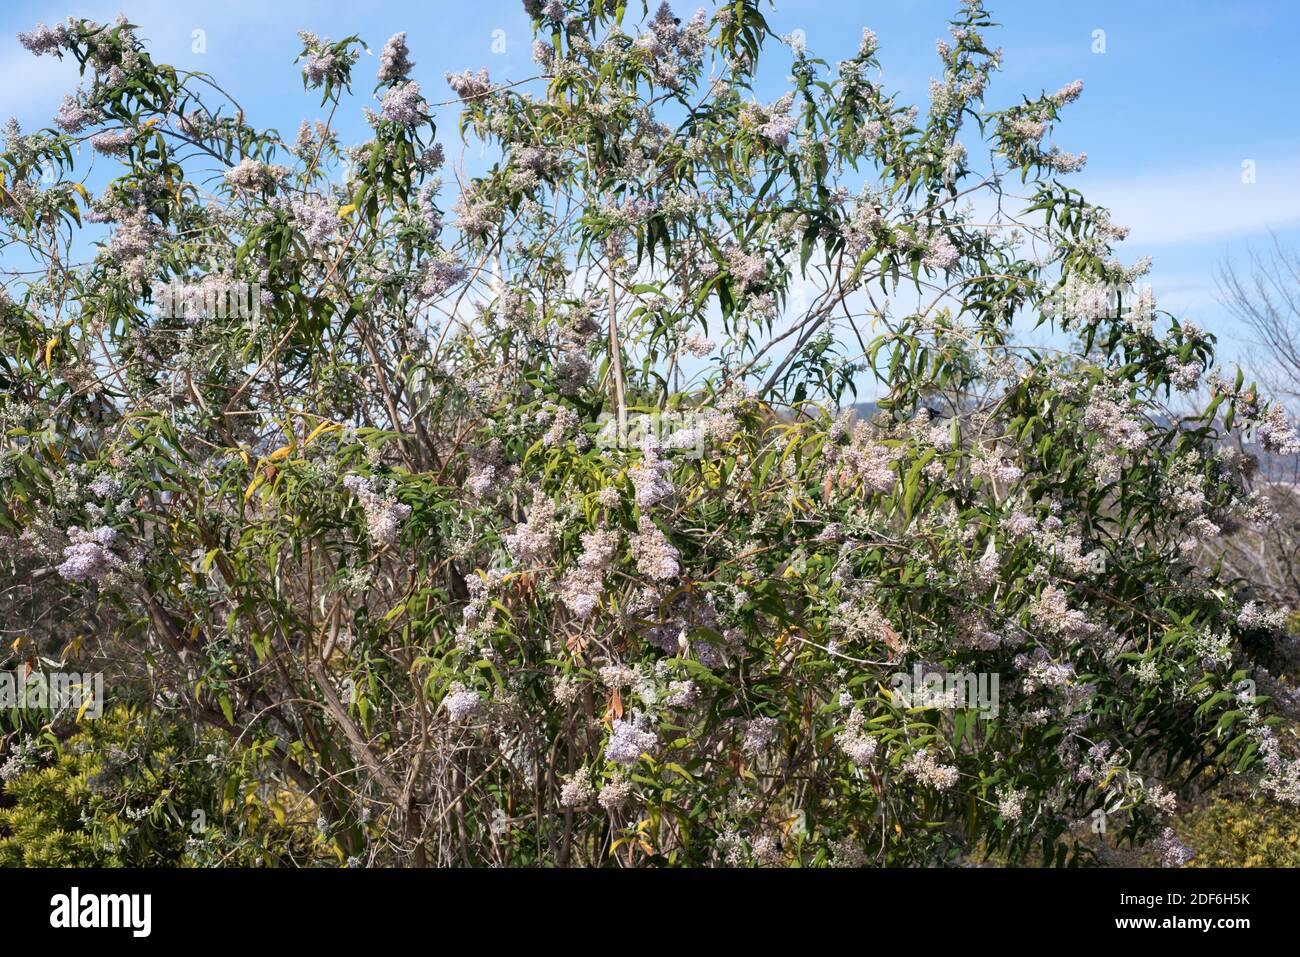 El arbusto de Sage o sagowood (Buddleja salviifolia) es un arbusto endémico de África oriental. Foto de stock